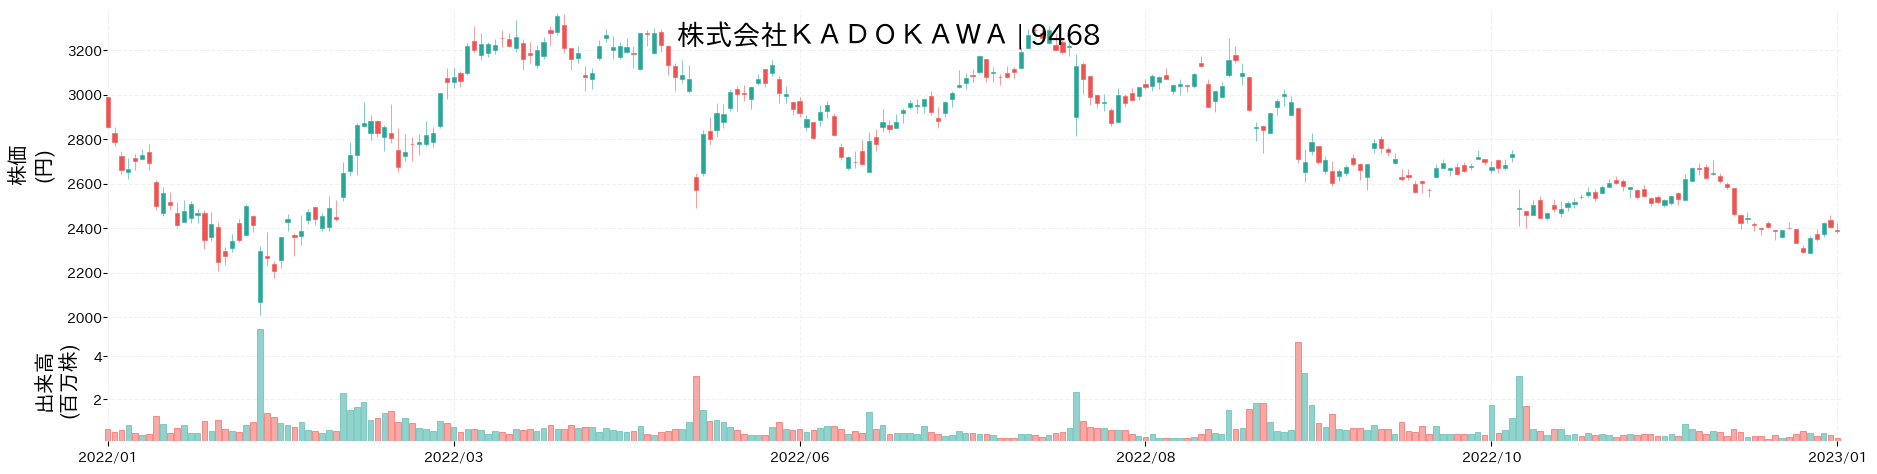 KADOKAWAの株価推移(2022)